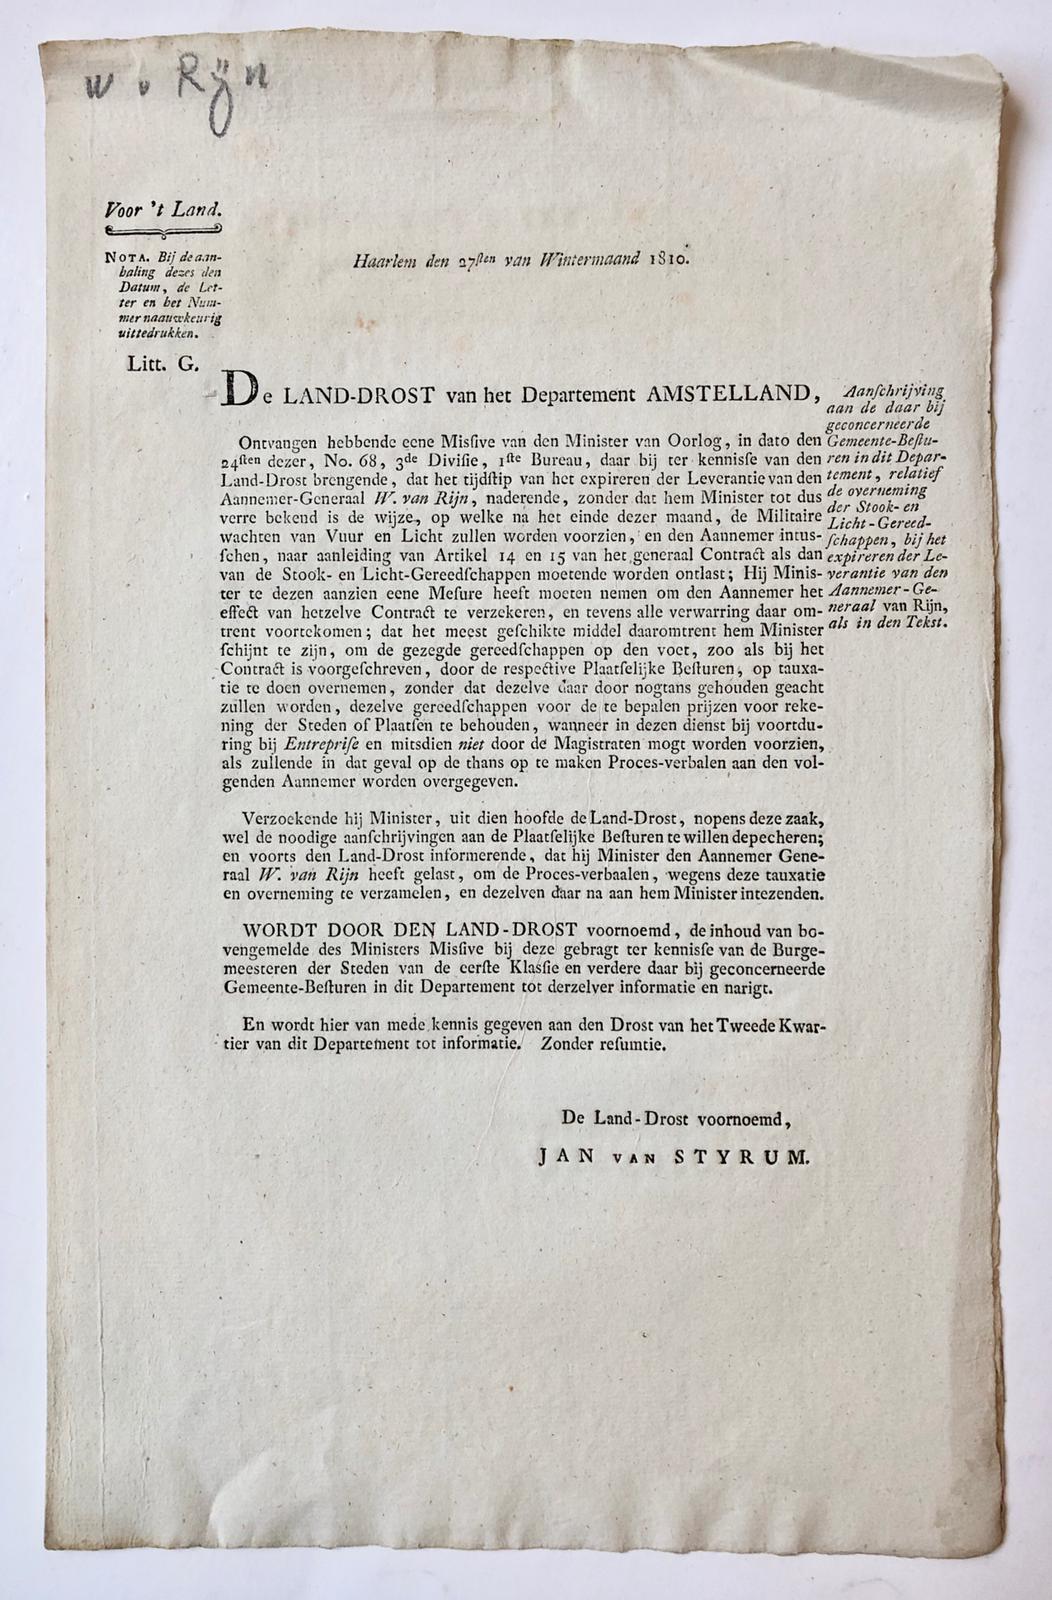 [PRINTED PUBLICATION, 1810] Gedrukte aanschrijving van de Landdrost van het Dep. Amstelland, dd 27-12-1810 betr. de aannemer van stook-licht en gereedschappen W. van Rijn. Folio, 2p.